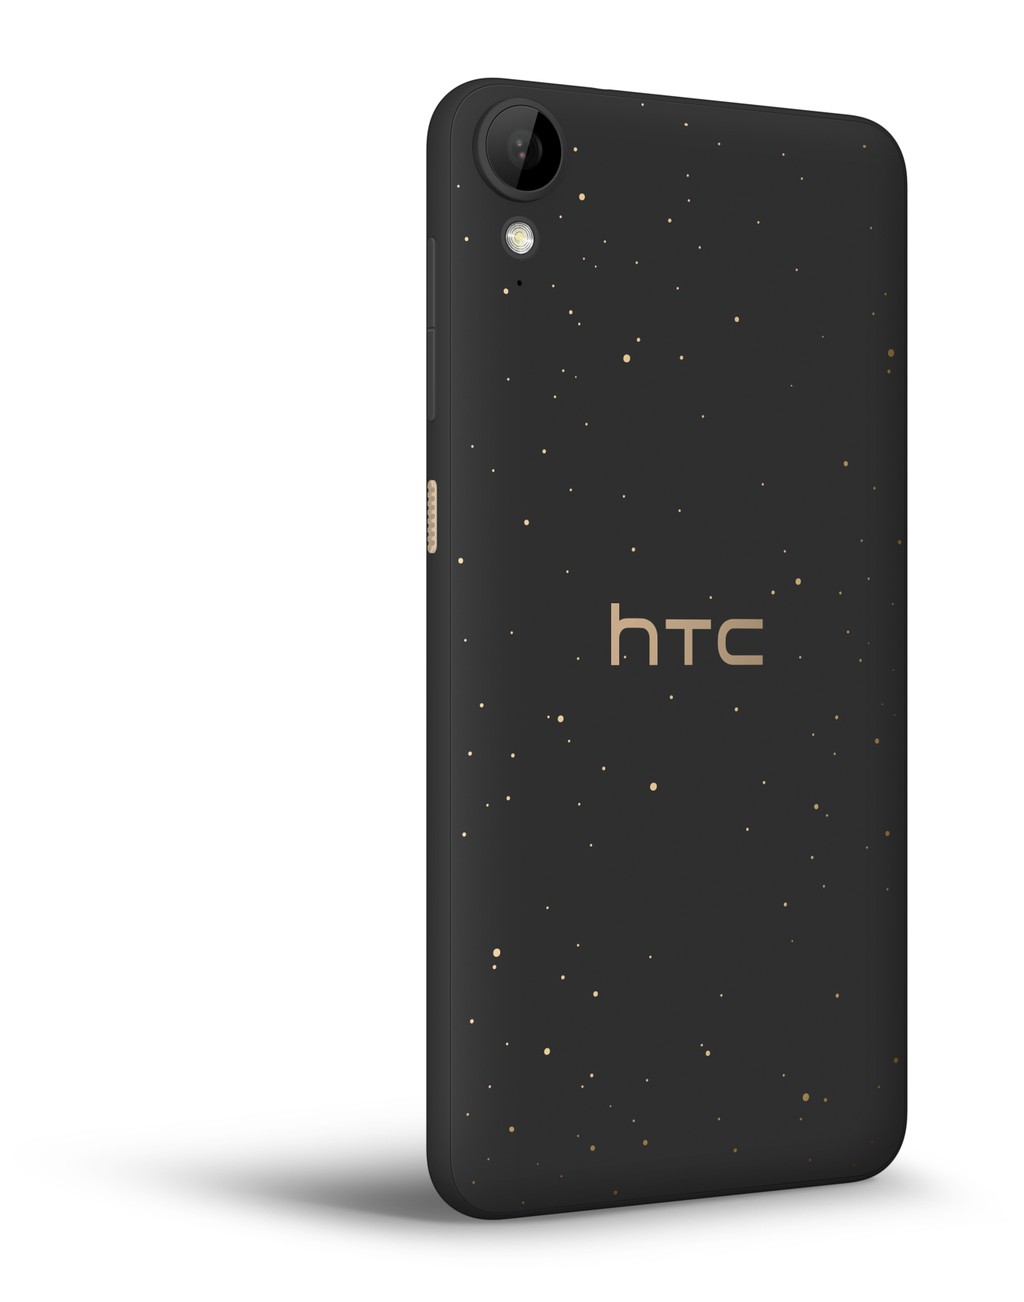 HTC âm thầm tung loạt smartphone mới tại MWC 2016 ảnh 7